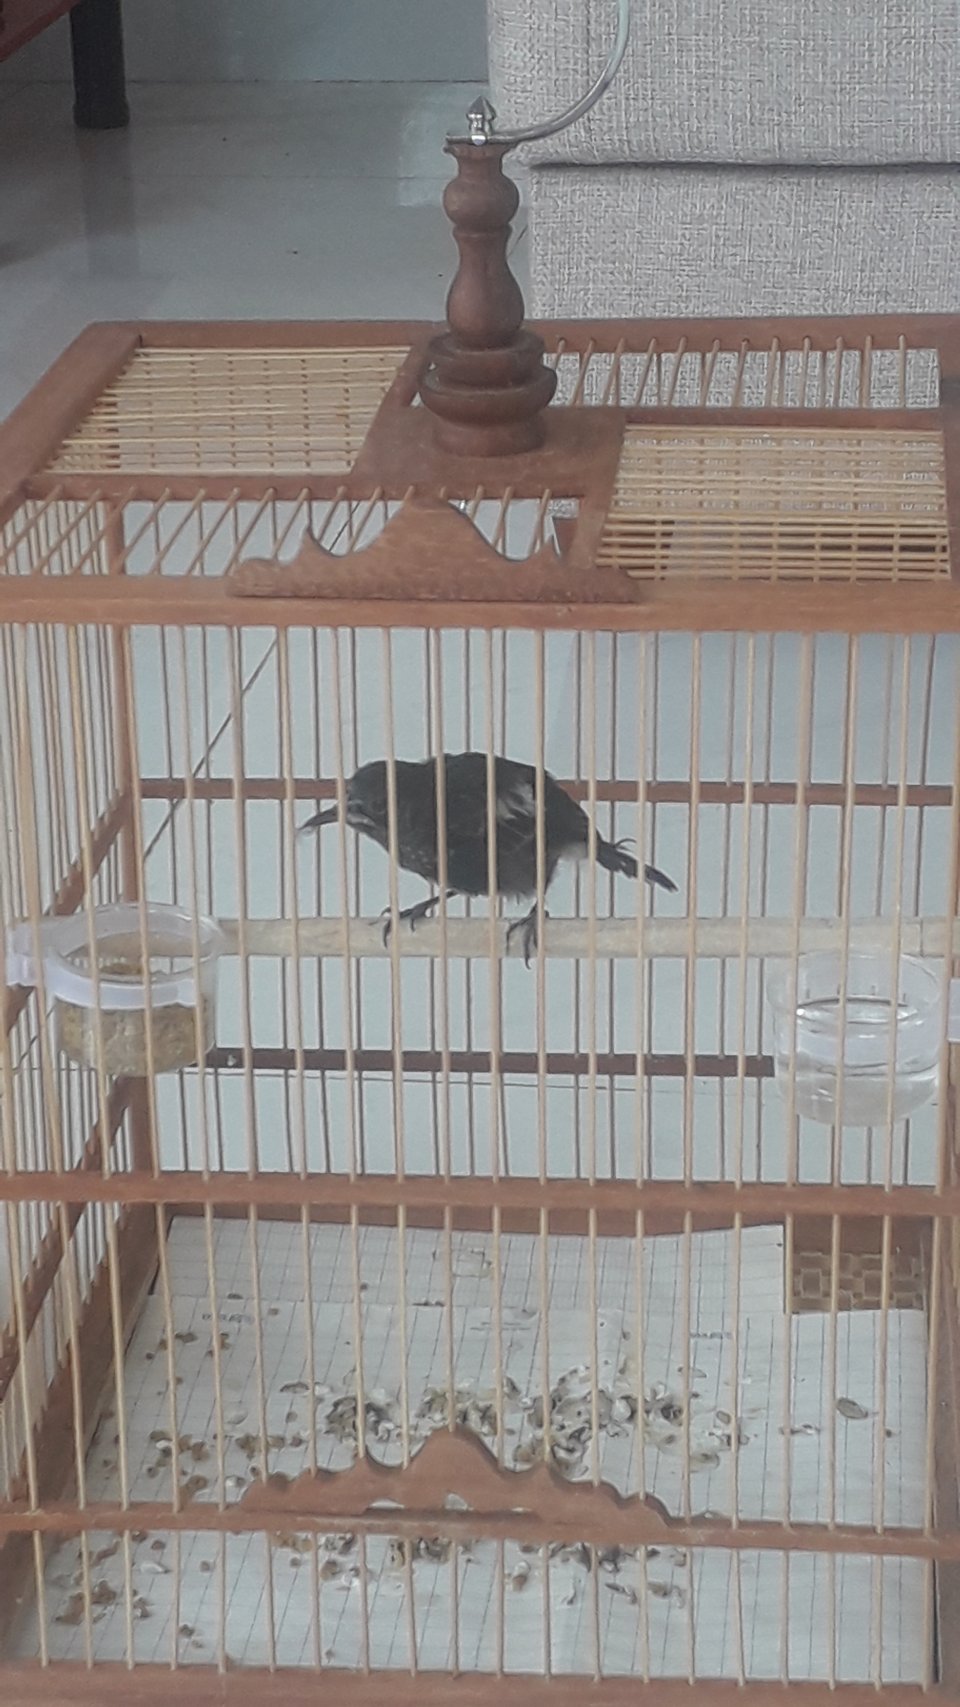 Cách nuôi chim Chích Chòe Than Đất kêu khỏe hót hay | Pet Mart